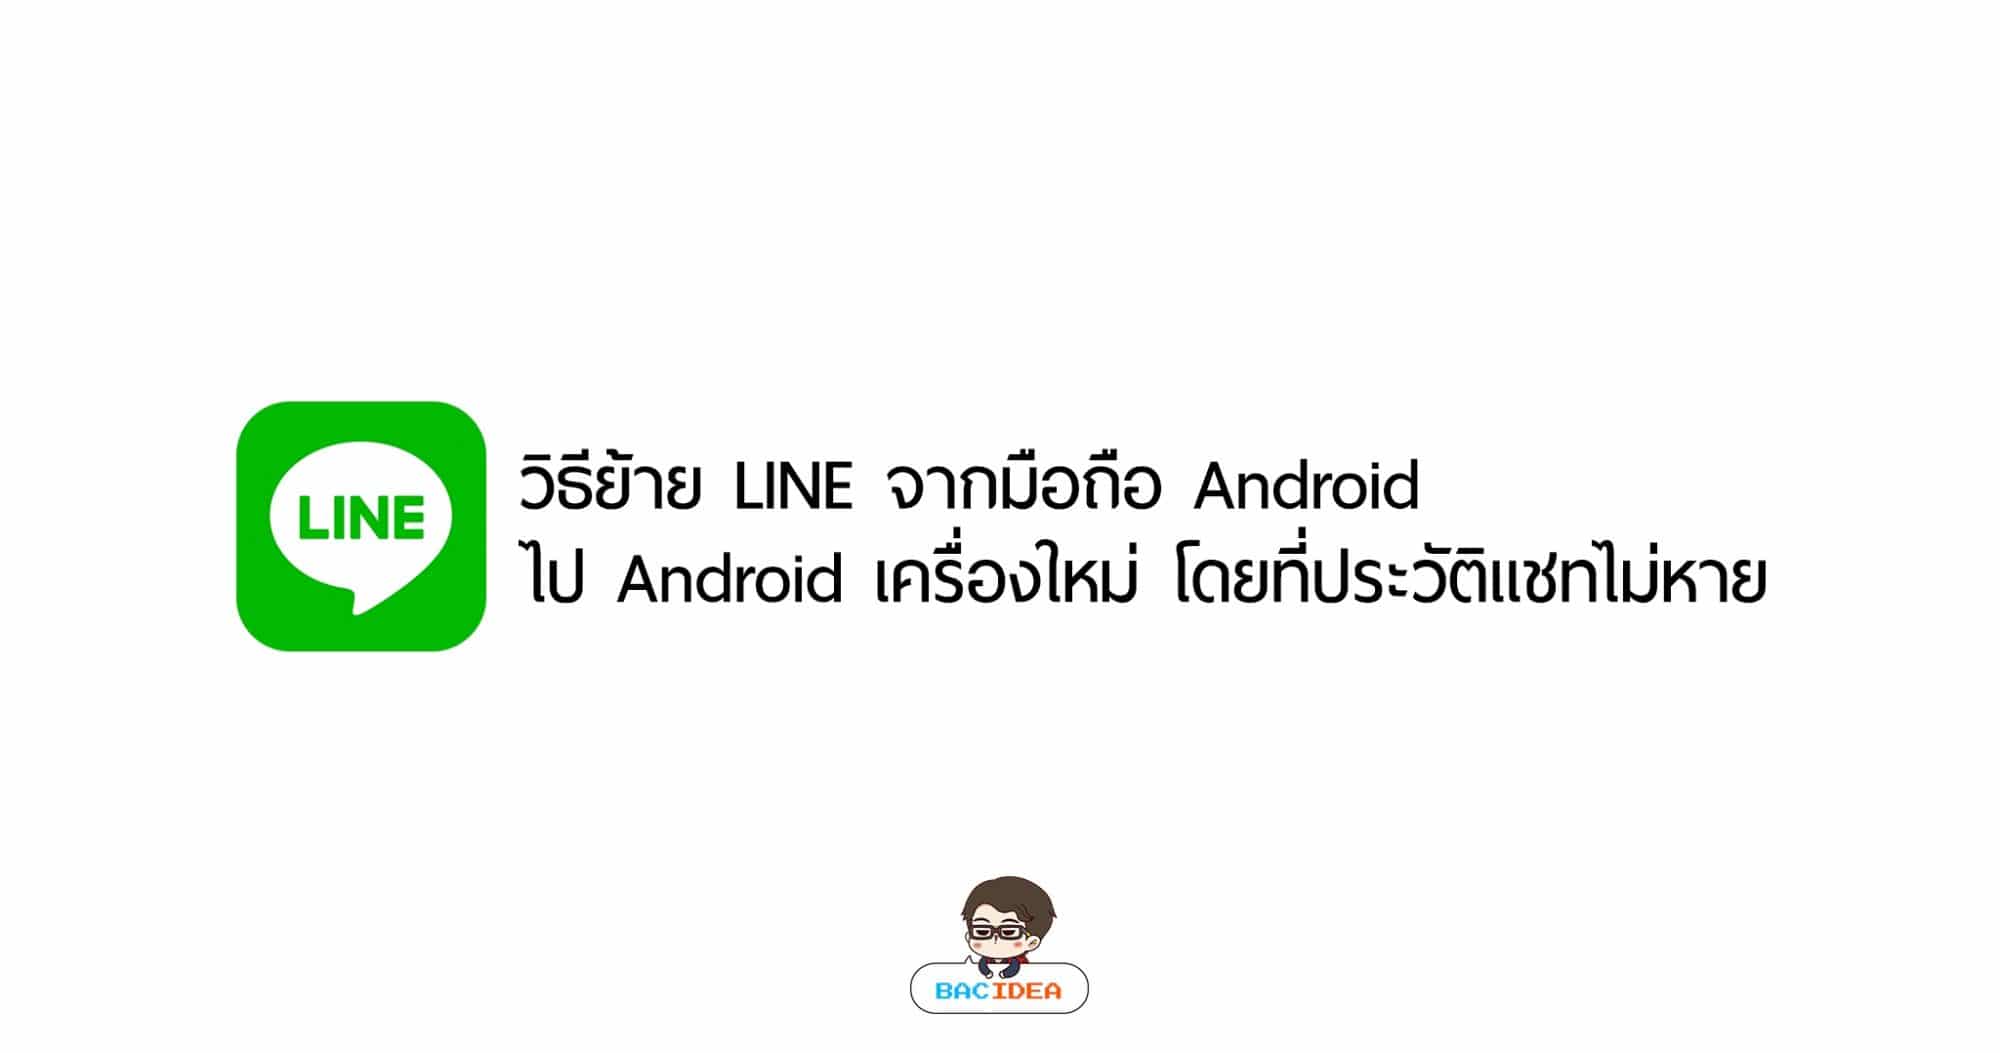 วิธีย้าย LINE จากมือถือ Android ไป Android เครื่องใหม่ โดยที่ประวัติแชทไม่หาย 1